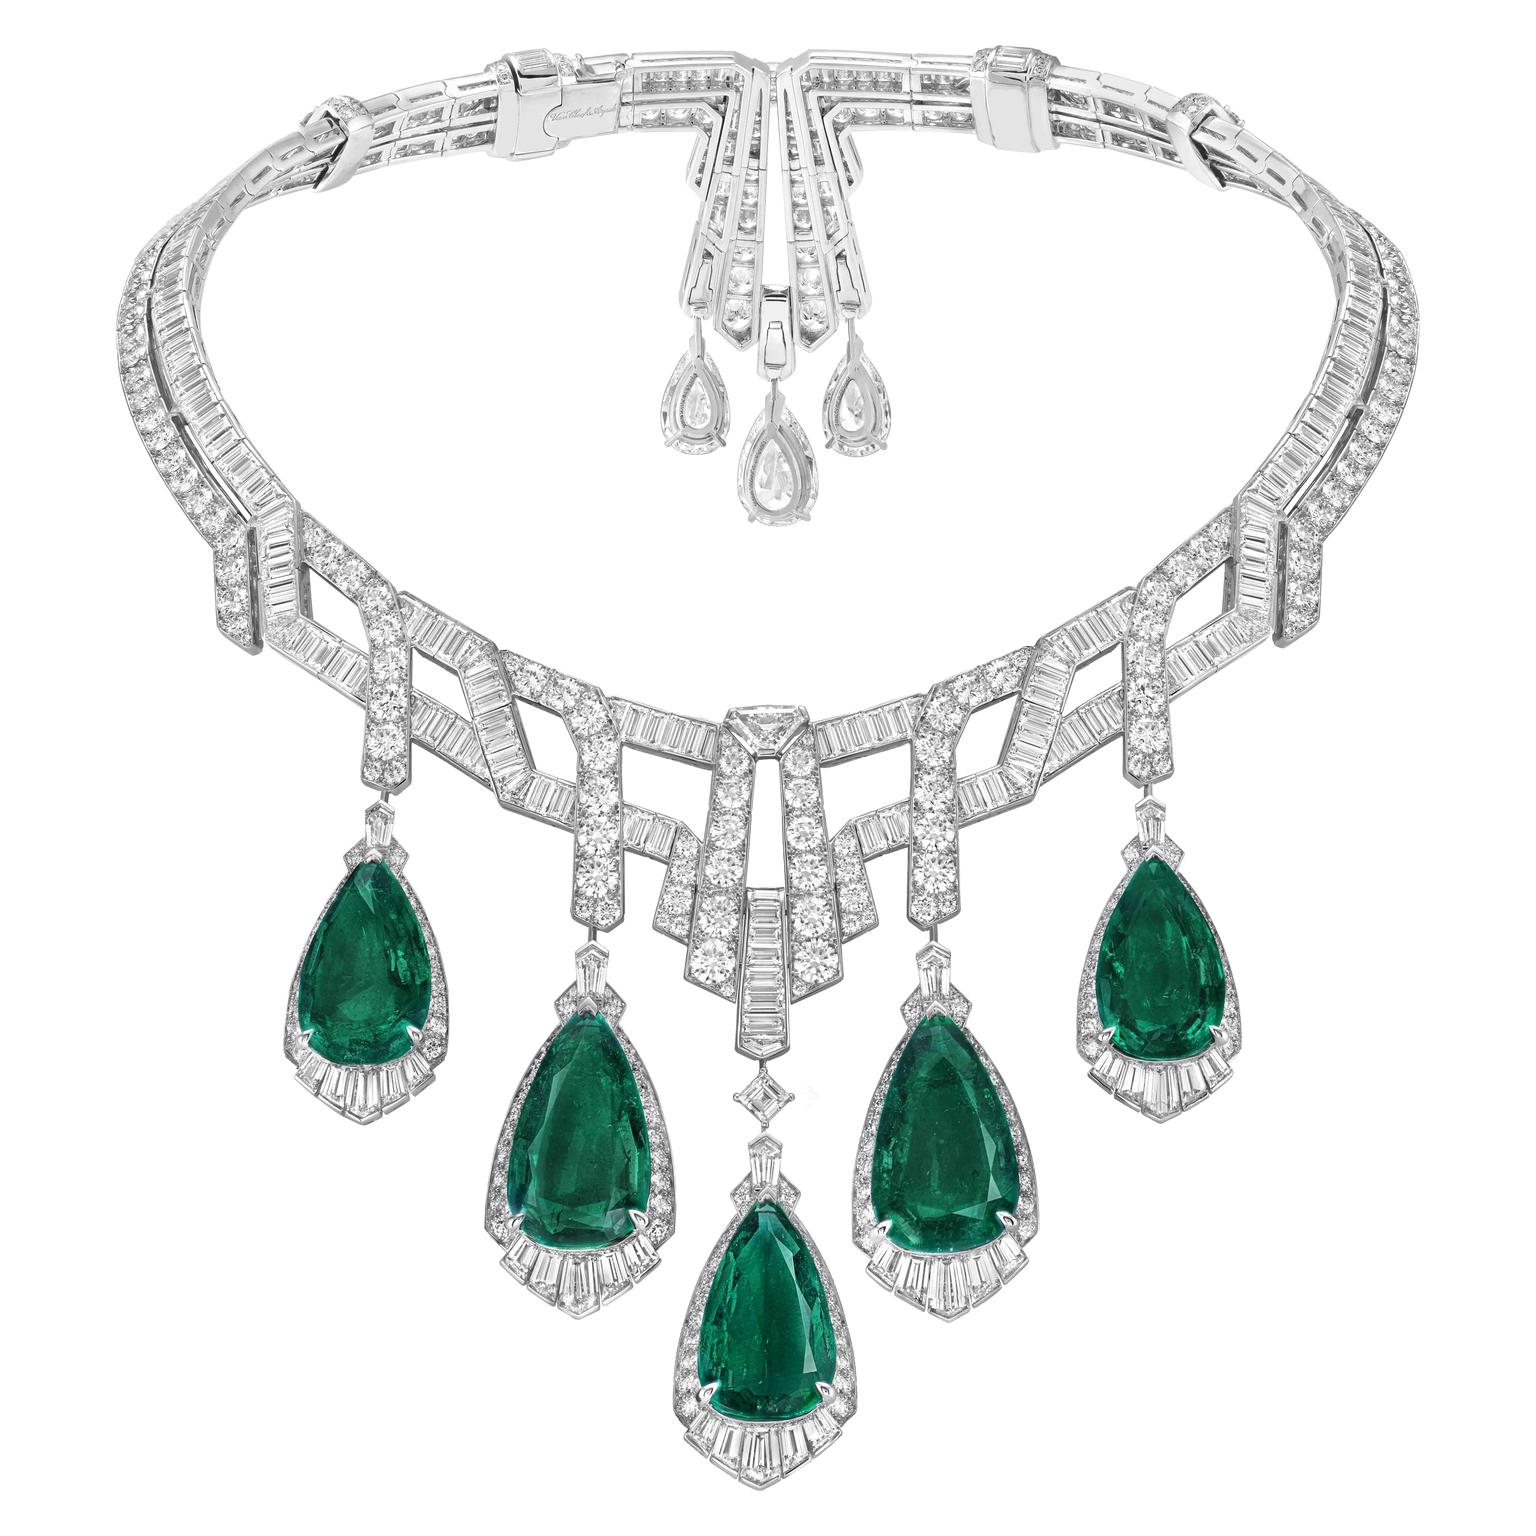 Van Cleef & Arpels Merveilles d'émeraudes necklace with detachable pendants